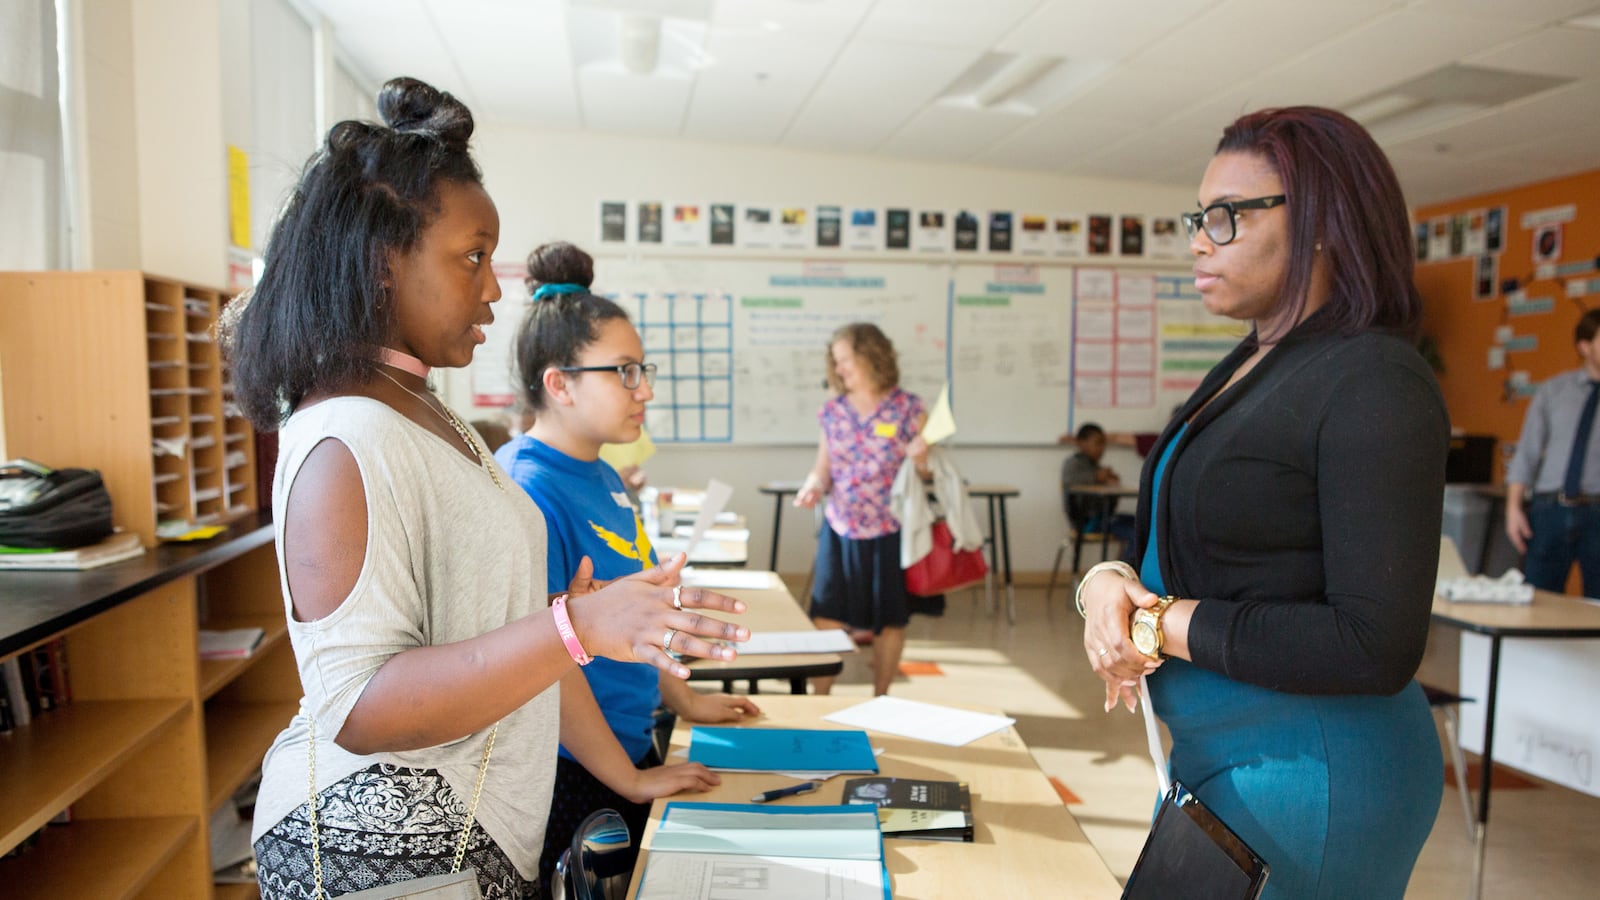 A student wearing a white shirt talks to a teacher wearing a black shirt inside of a classroom.